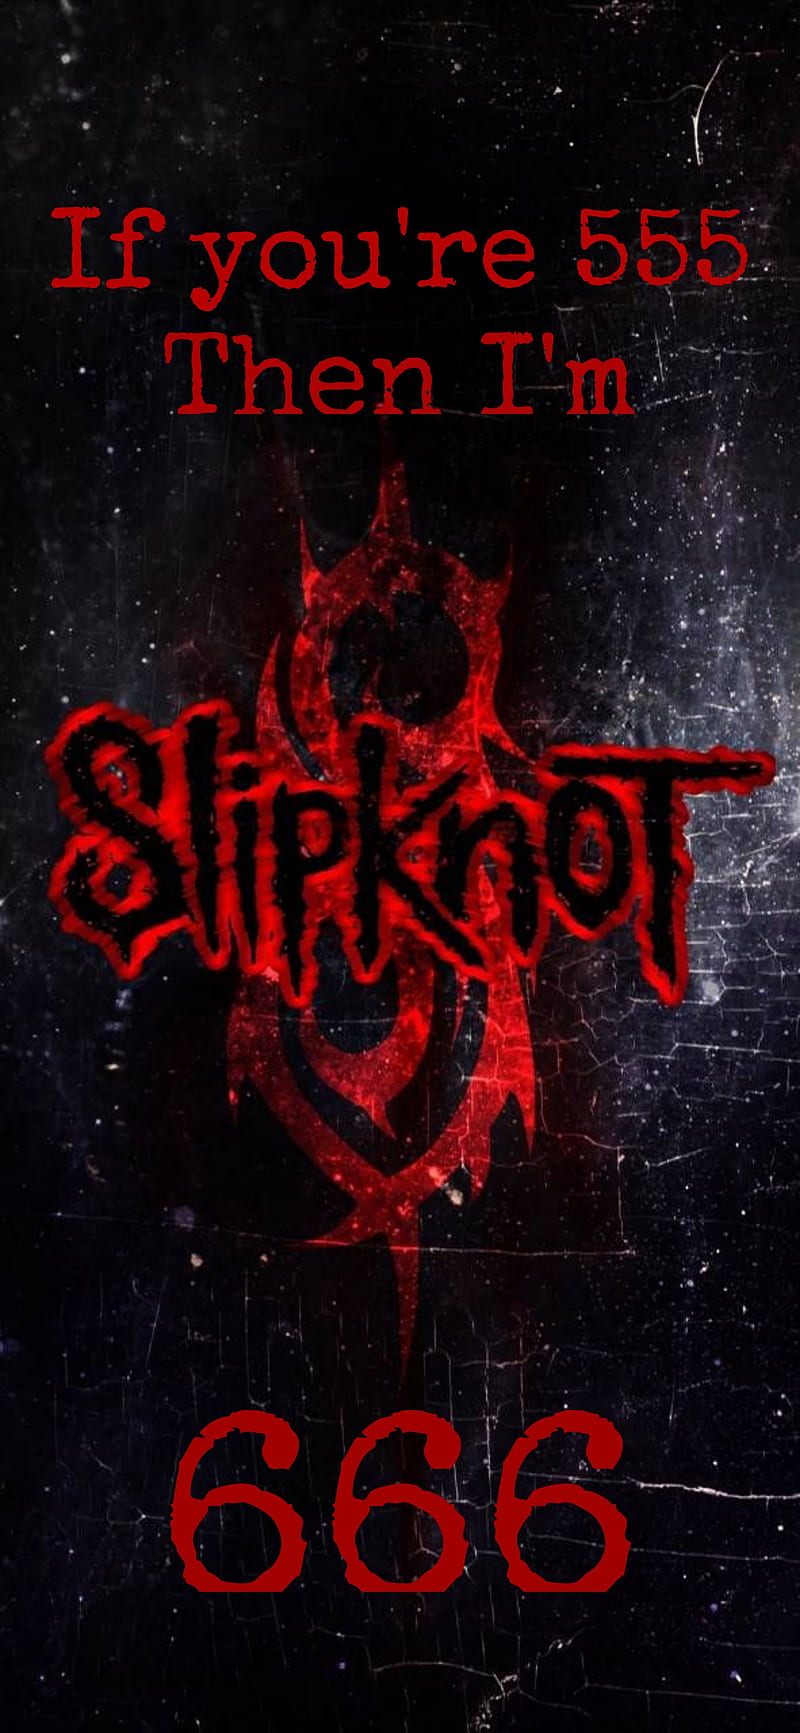 Slipknot: Tham quan hình ảnh của ban nhạc metalcore nổi tiếng, Slipknot, và khám phá một niềm đam mê và năng lượng bùng nổ. Chiêm ngưỡng các trang phục và ánh sáng kịch tính của họ trên sân khấu và tìm hiểu về thành công và sự kiện quan trọng trong sự nghiệp của họ.